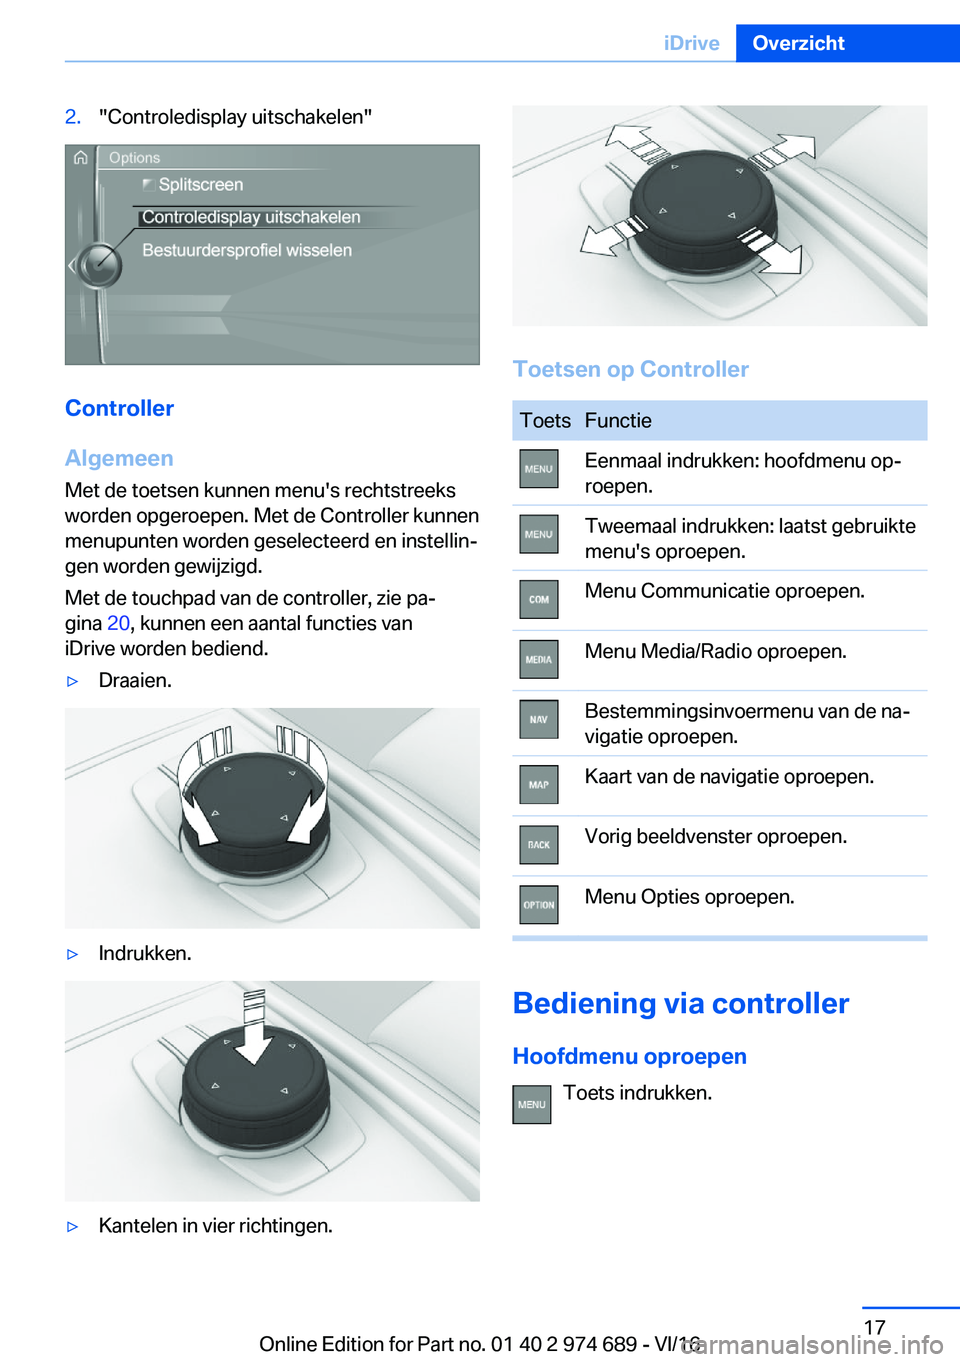 BMW M2 2017  Instructieboekjes (in Dutch) �2�.�"�C�o�n�t�r�o�l�e�d�i�s�p�l�a�y� �u�i�t�s�c�h�a�k�e�l�e�n�"
�C�o�n�t�r�o�l�l�e�r
�A�l�g�e�m�e�e�n
�M�e�t� �d�e� �t�o�e�t�s�e�n� �k�u�n�n�e�n� �m�e�n�u�'�s� �r�e�c�h�t�s�t�r�e�e�k�s �w